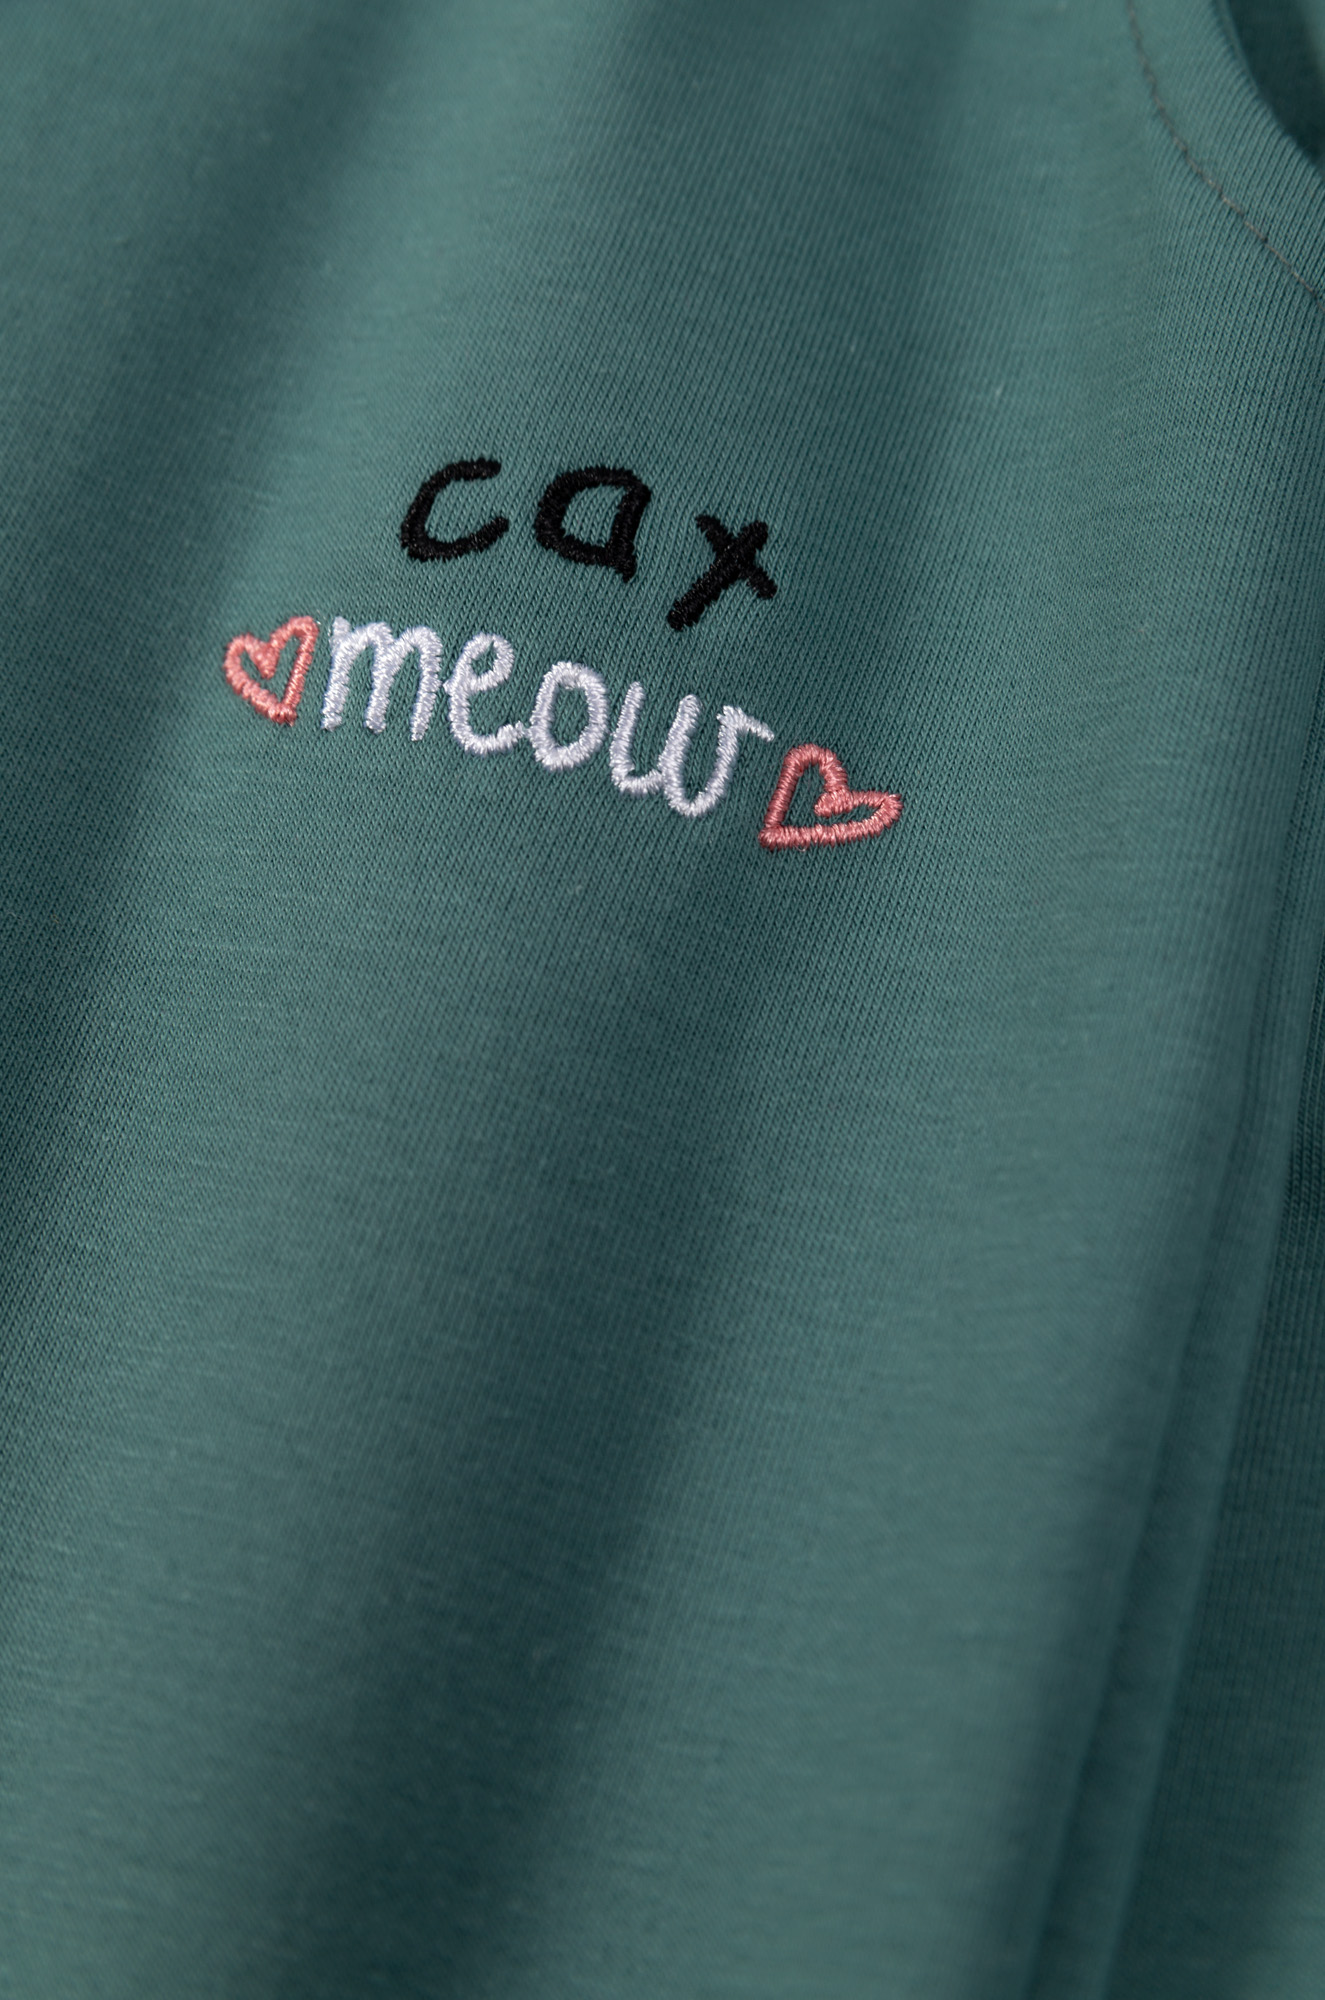 Штаны для девочек "Cat meaw green"